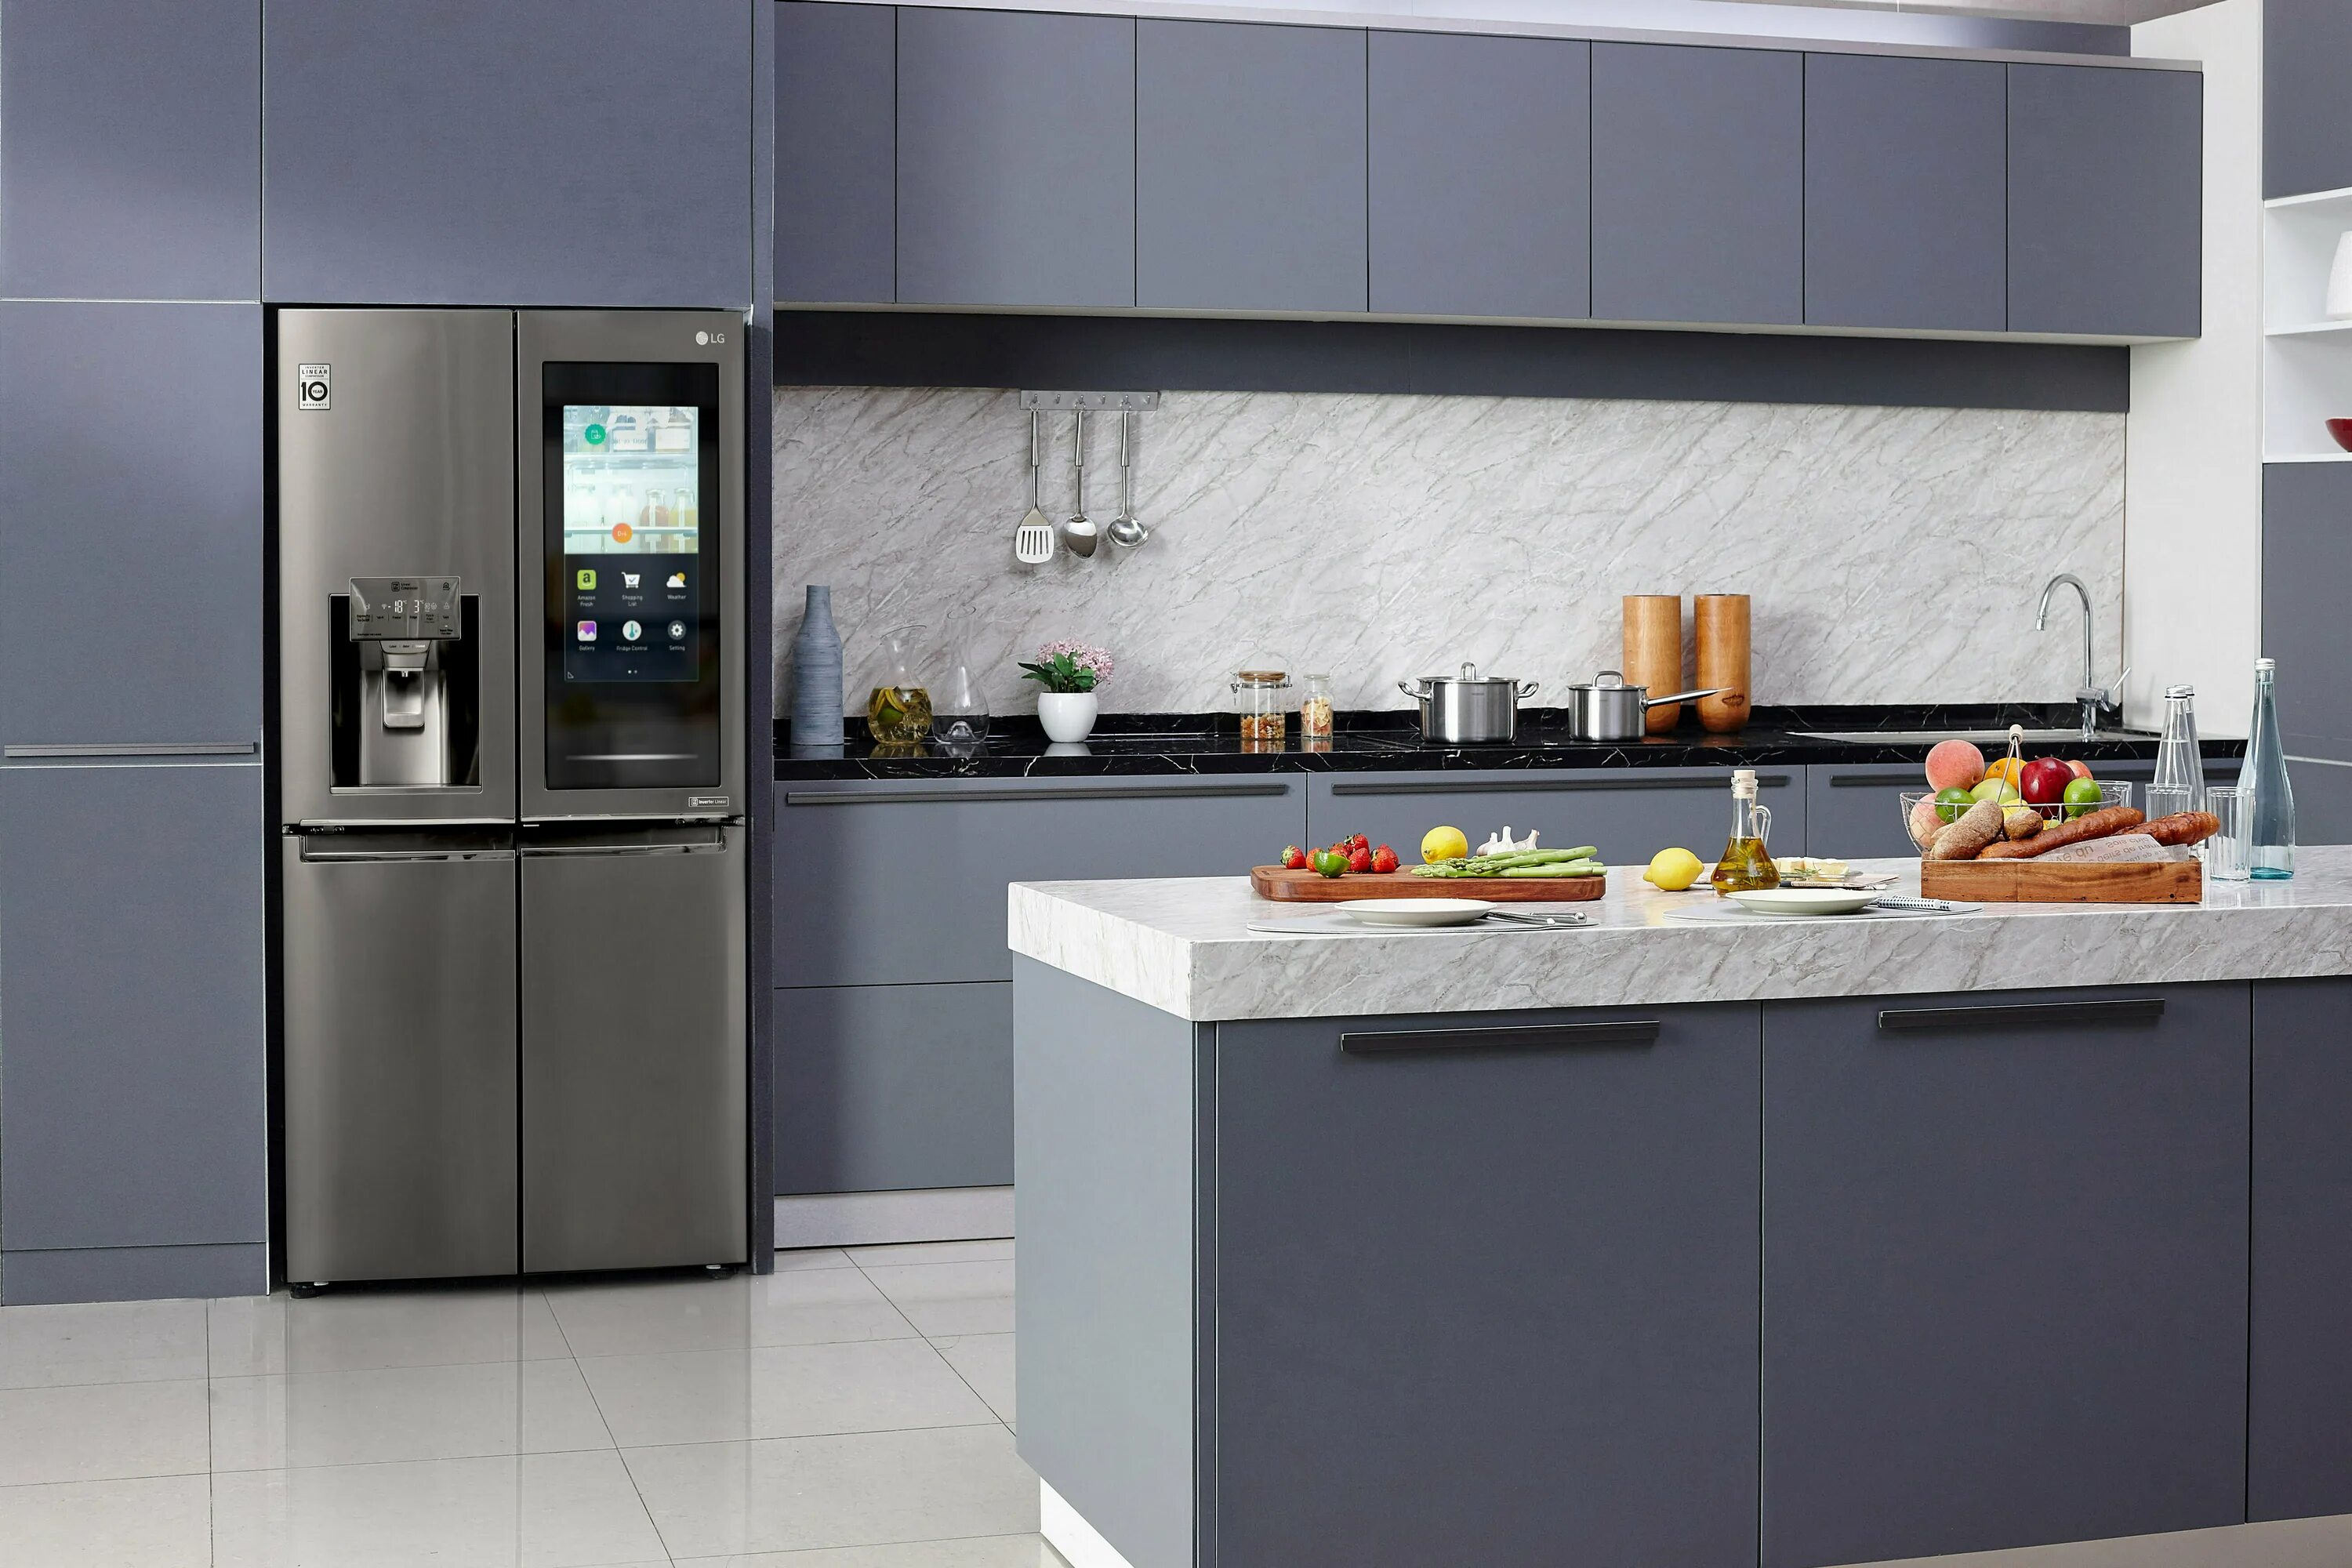 Холодильник LG instaview. LG THINQ холодильник. LG Refrigerator 2020. Холодильник Samsung 2020. Холодильники новые модели